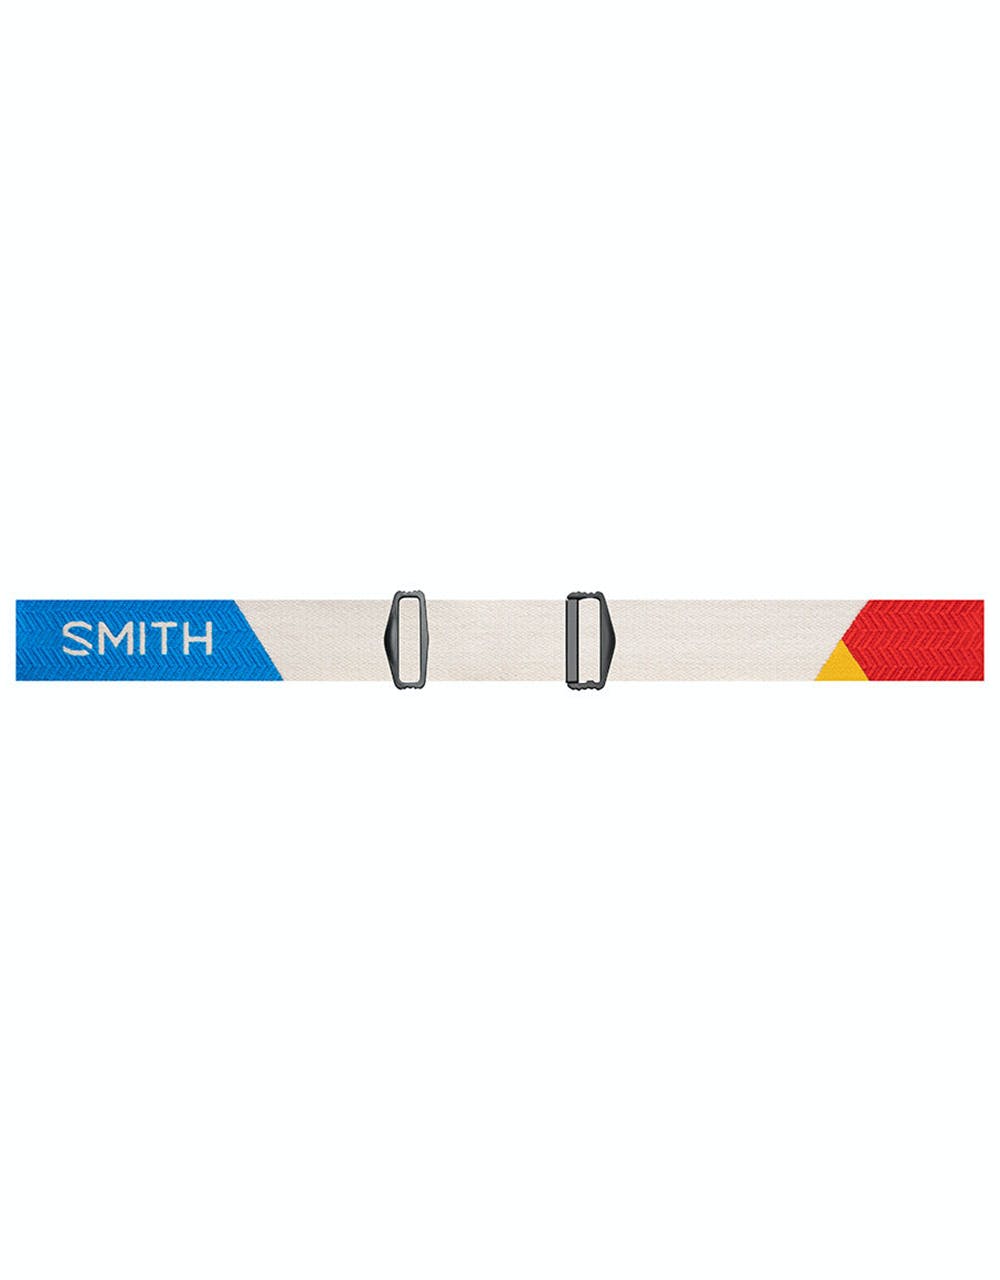 Smith Squad XL Snowboard Goggles - Rise Block/Sun Red Mirror